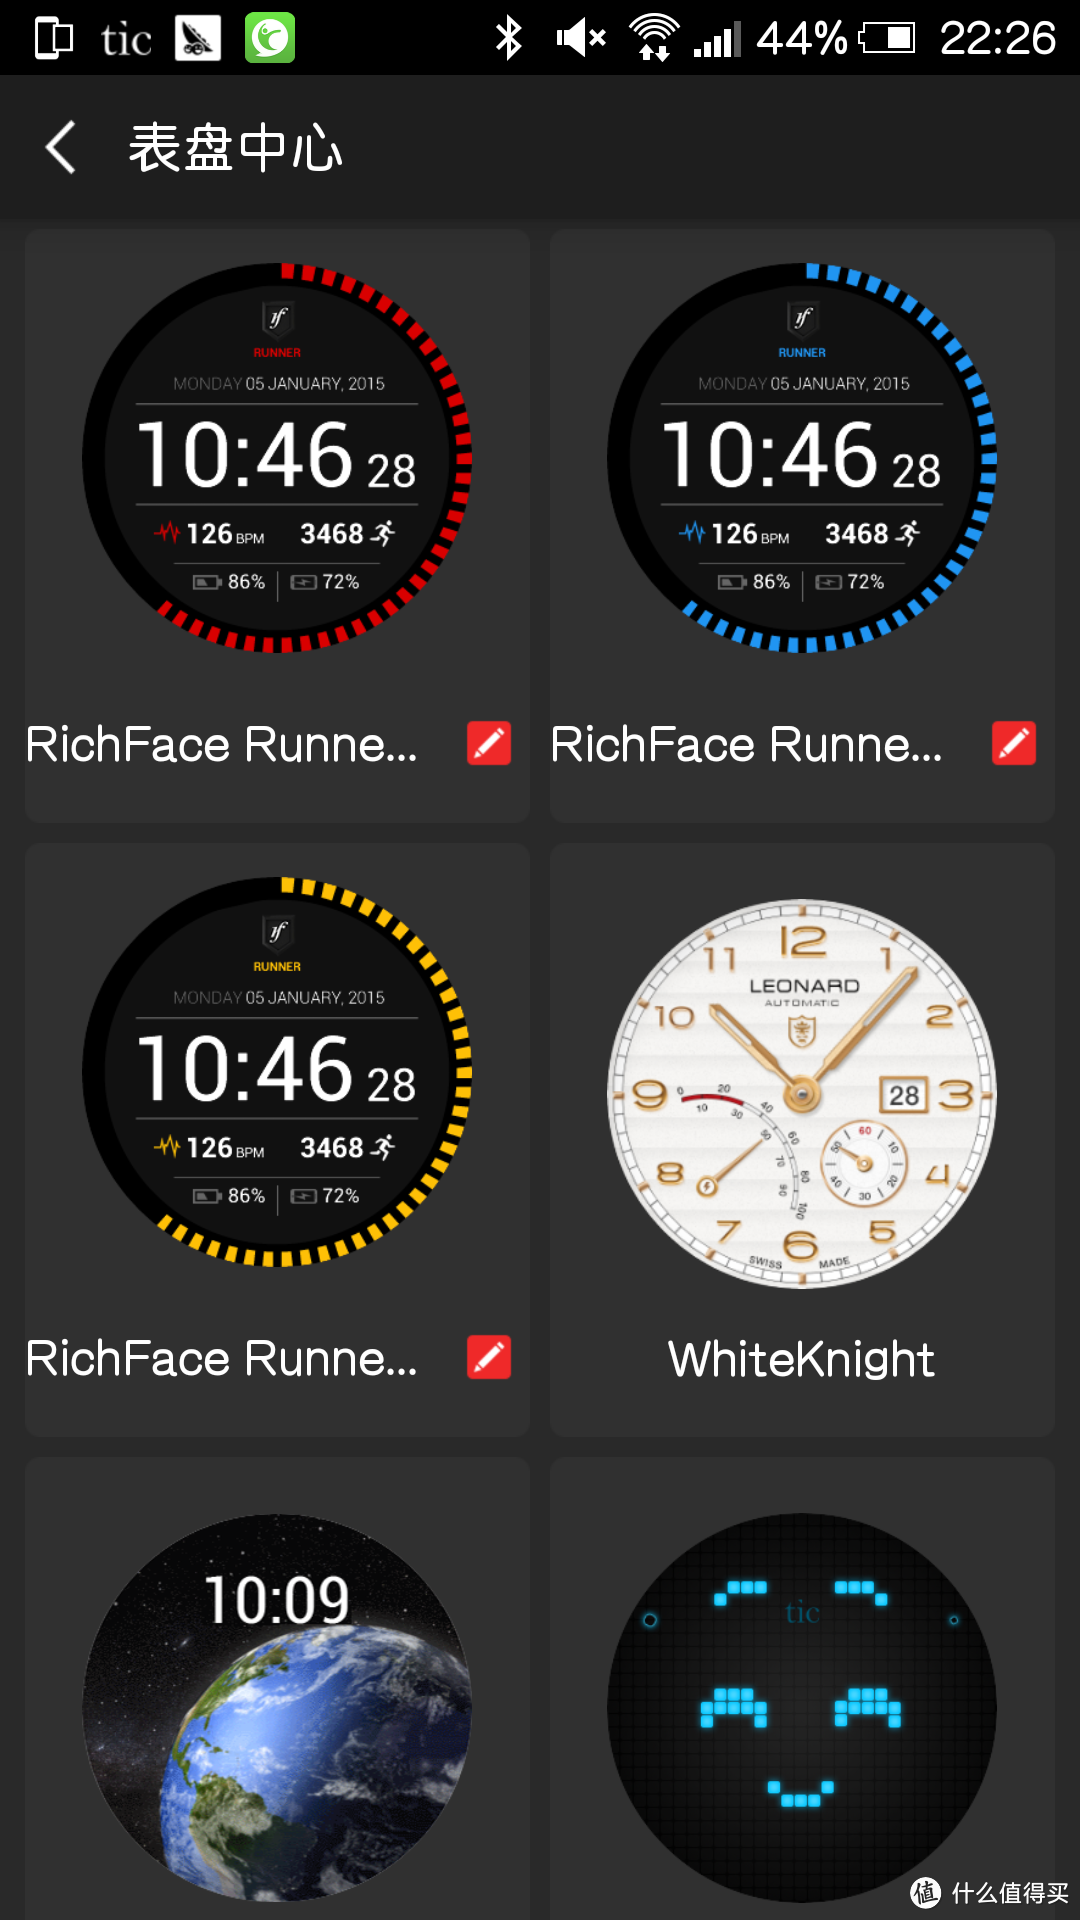 Ticwatch 智能手表 初体验